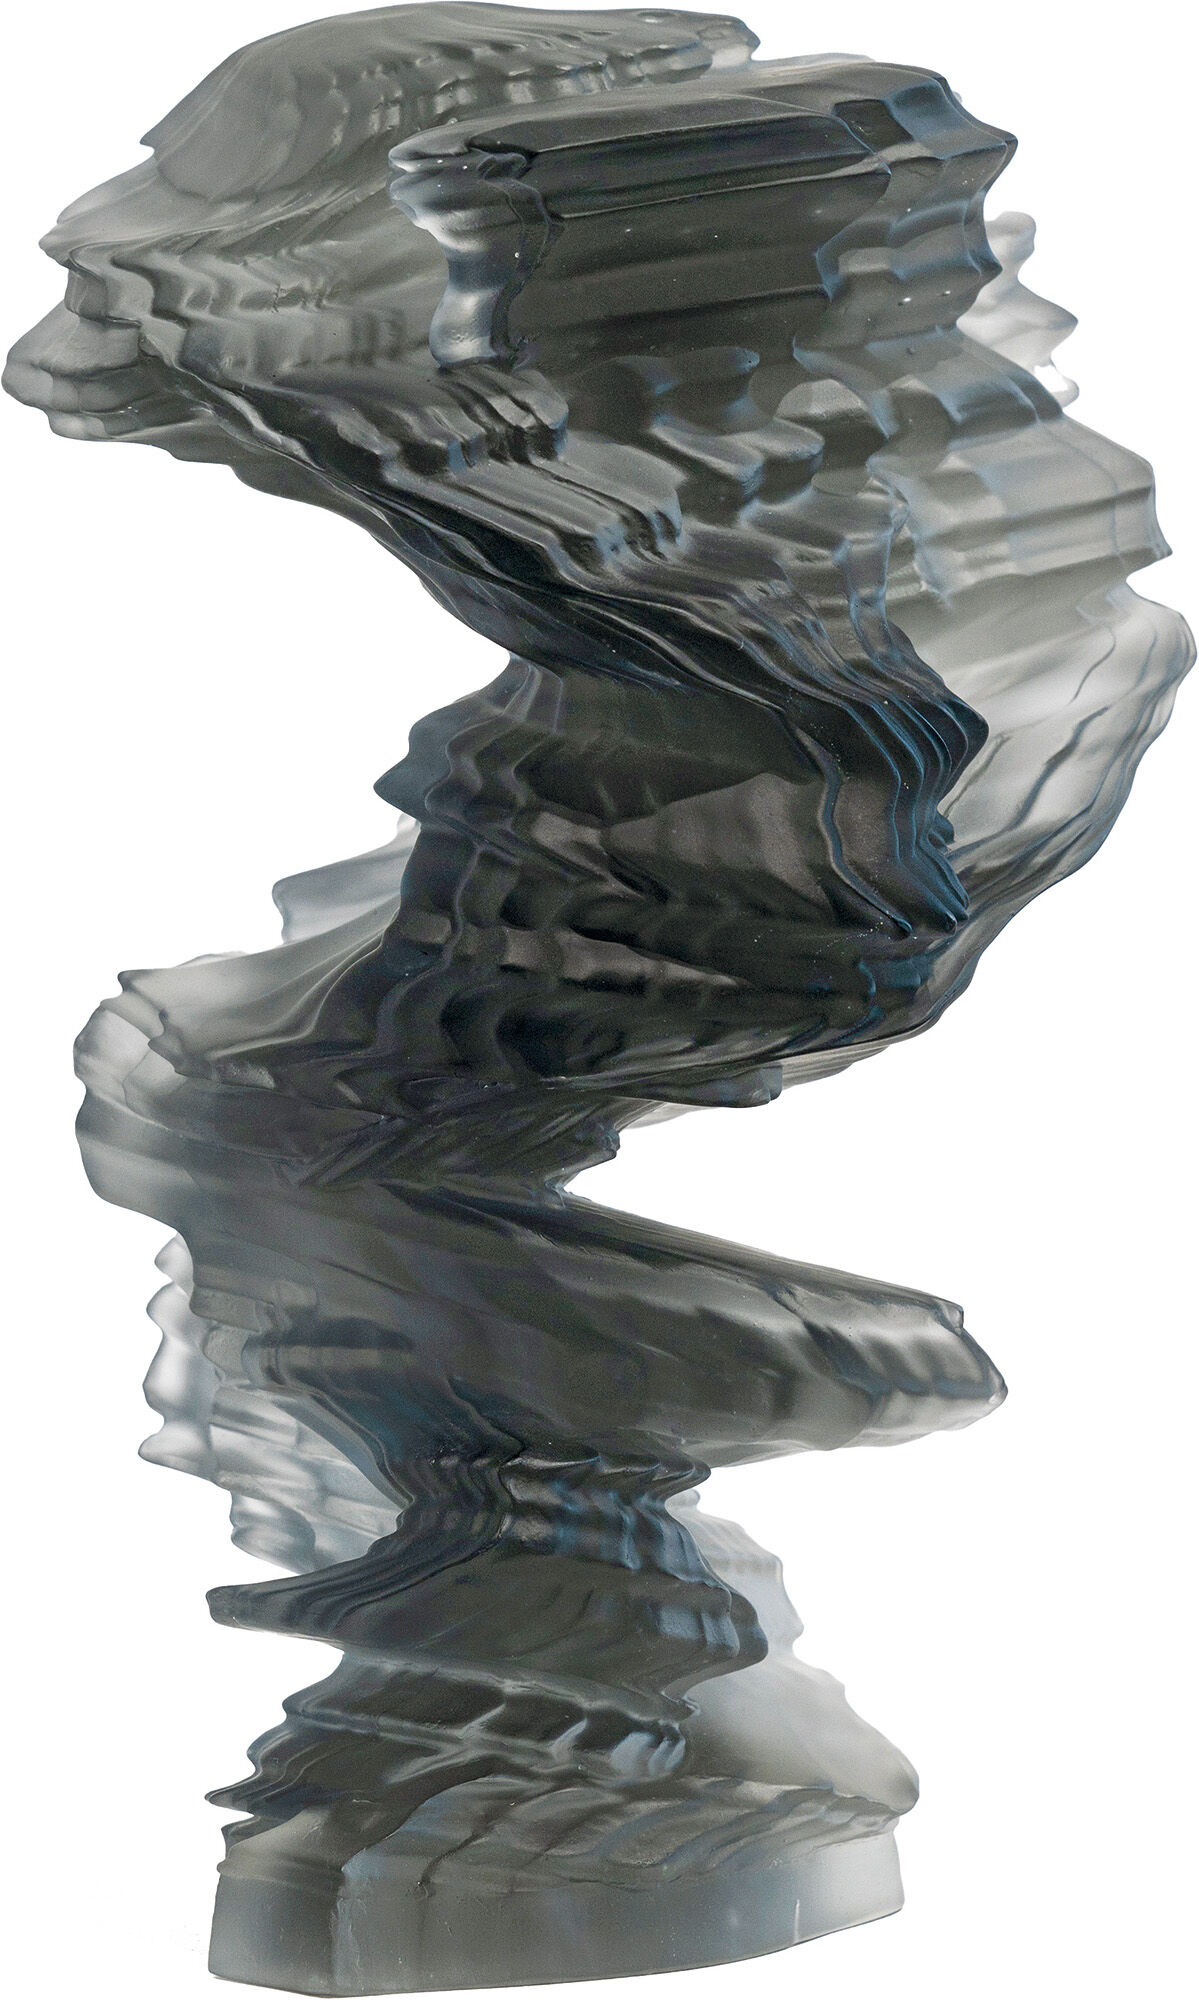 Skulptur "Stacks Grey" (2020), Glas von Tony Cragg